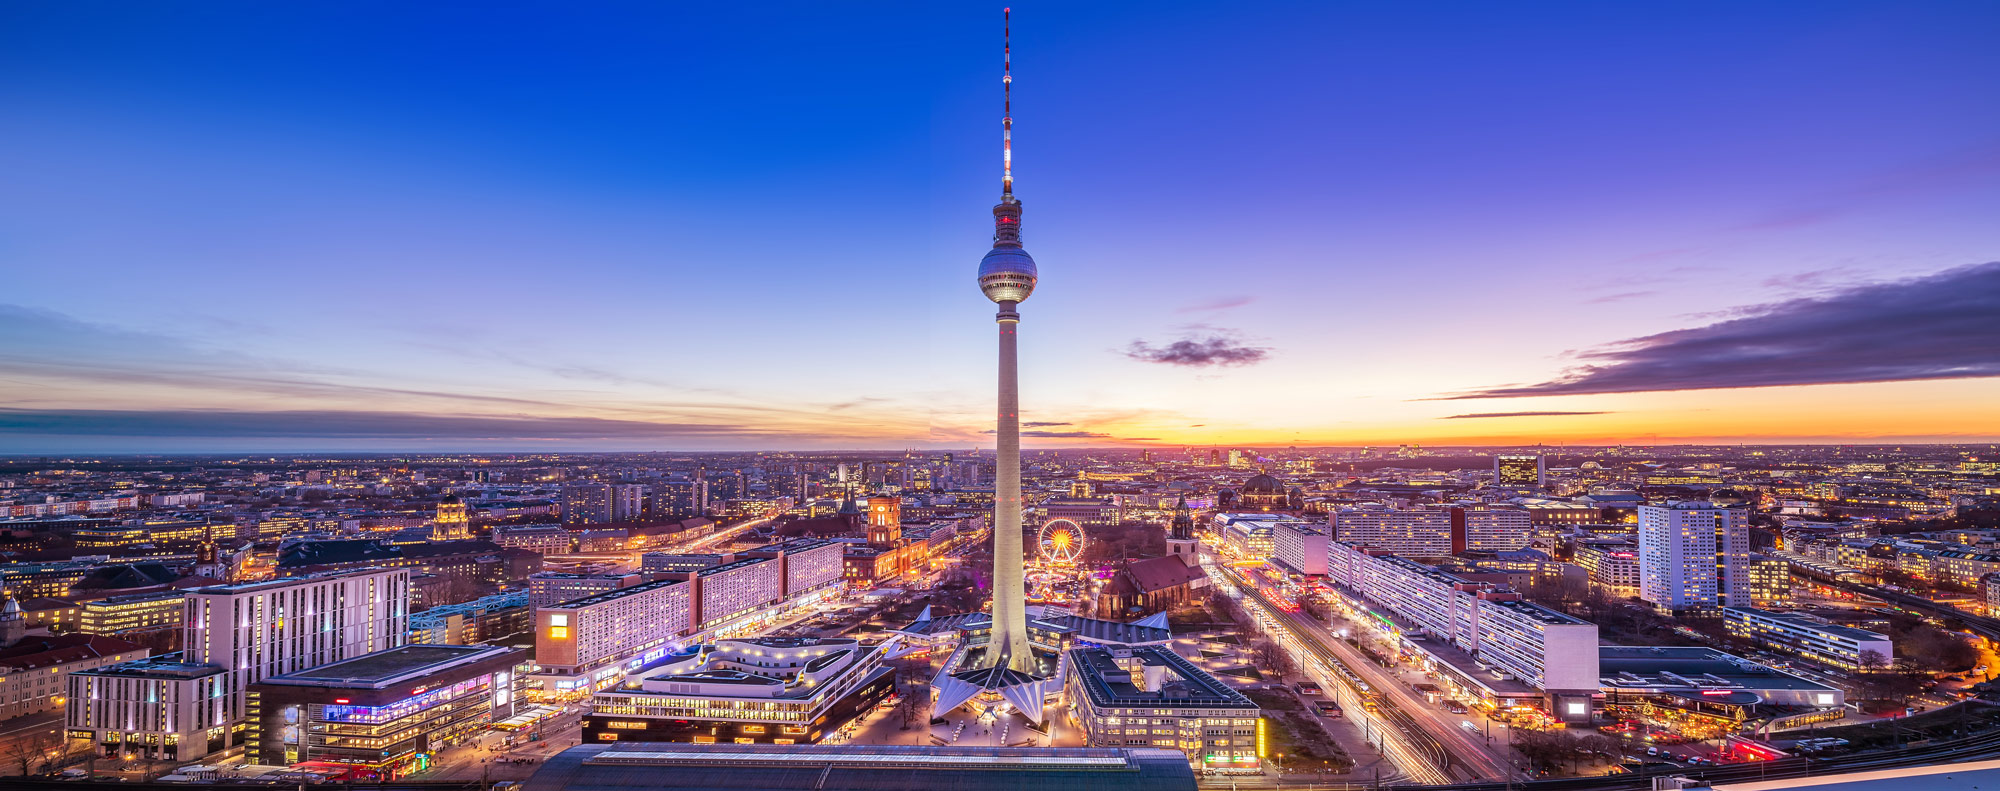 Foto dass die Dächer Berlins zeigt. Im Fokus steht der TV-Turm Alexanderplatz.